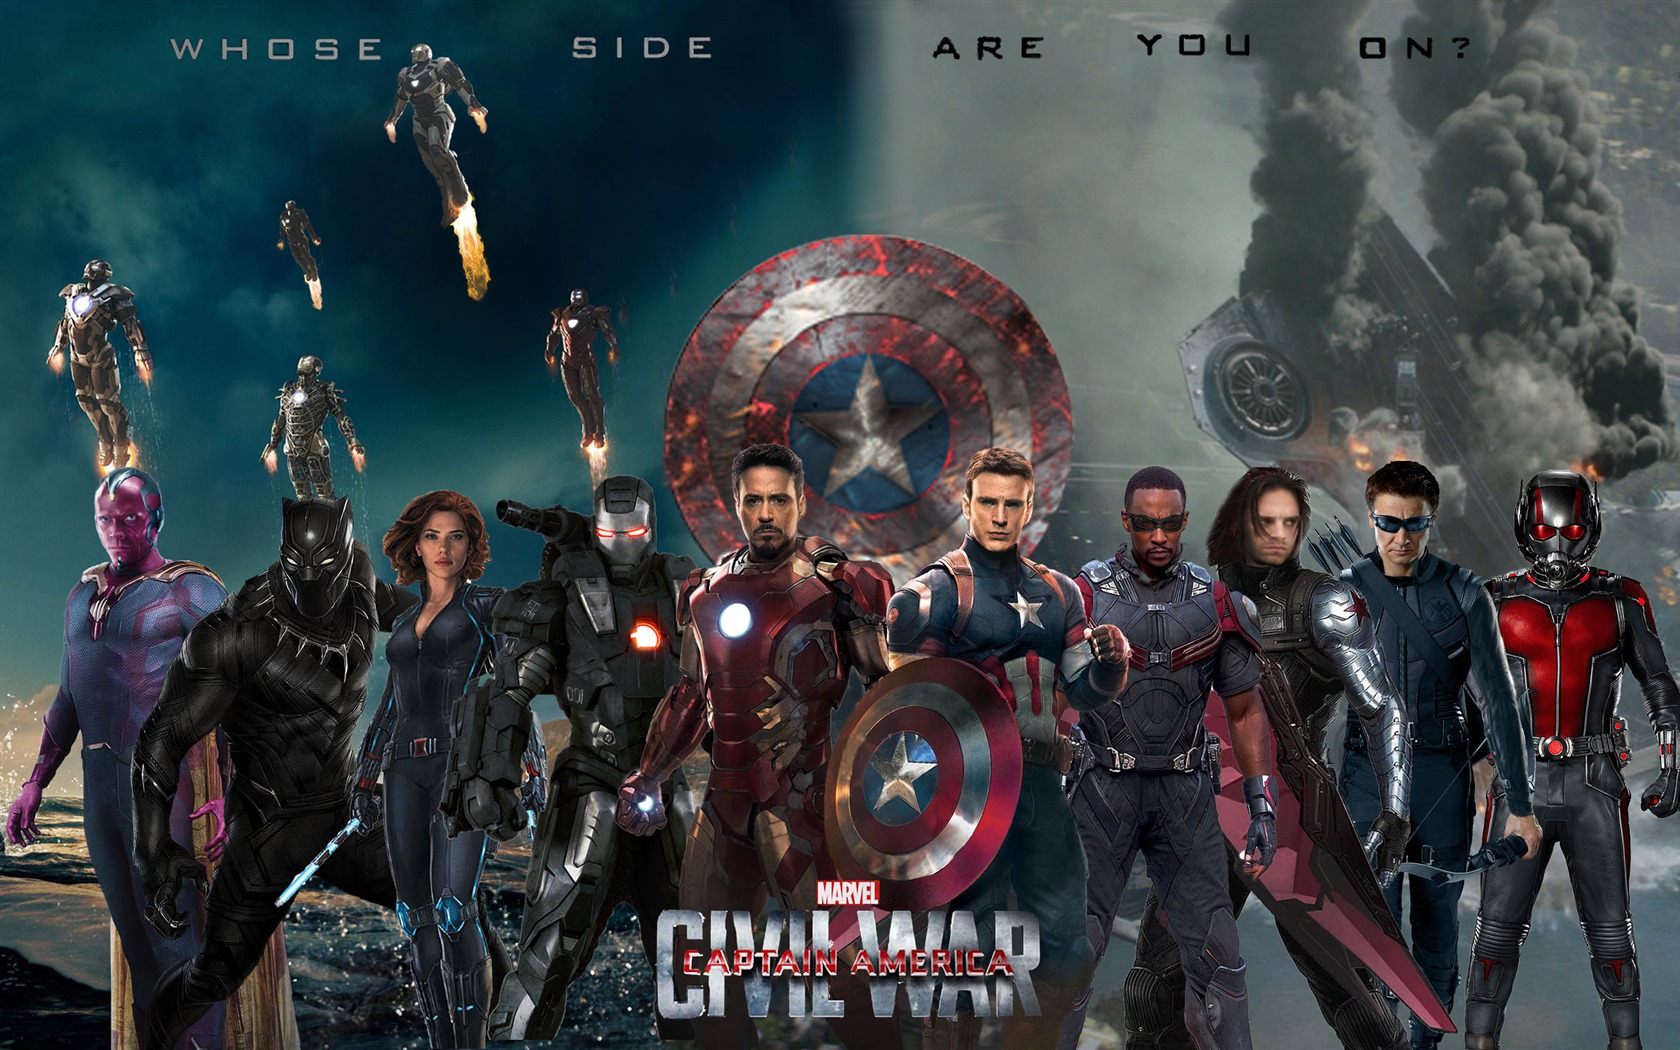 Capitán América: guerra civil, fondos de pantalla de alta definición de películas #11 - 1680x1050